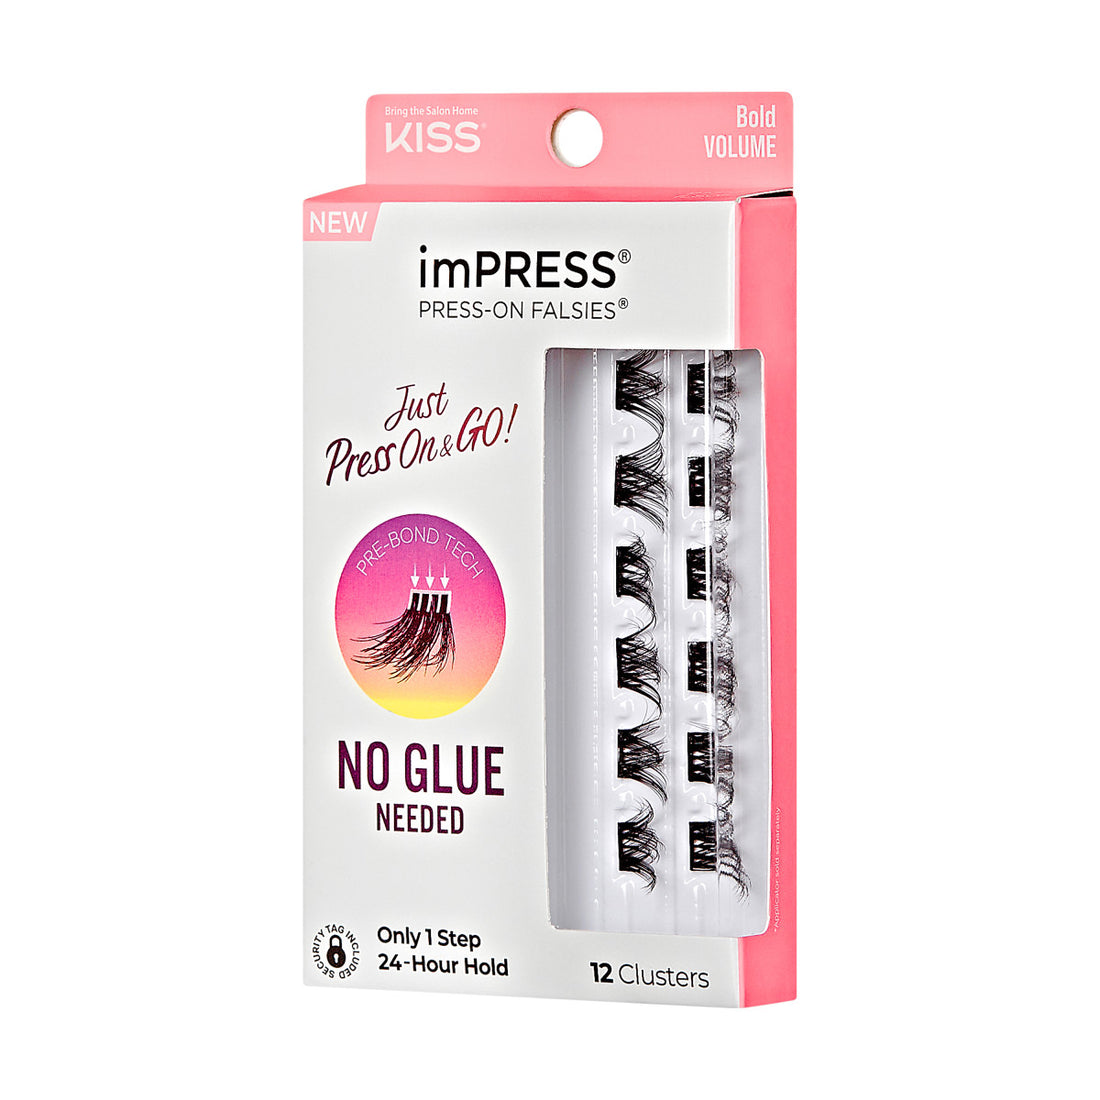 imPRESS Press-On Falsies Minipack 12 Clusters - Bold